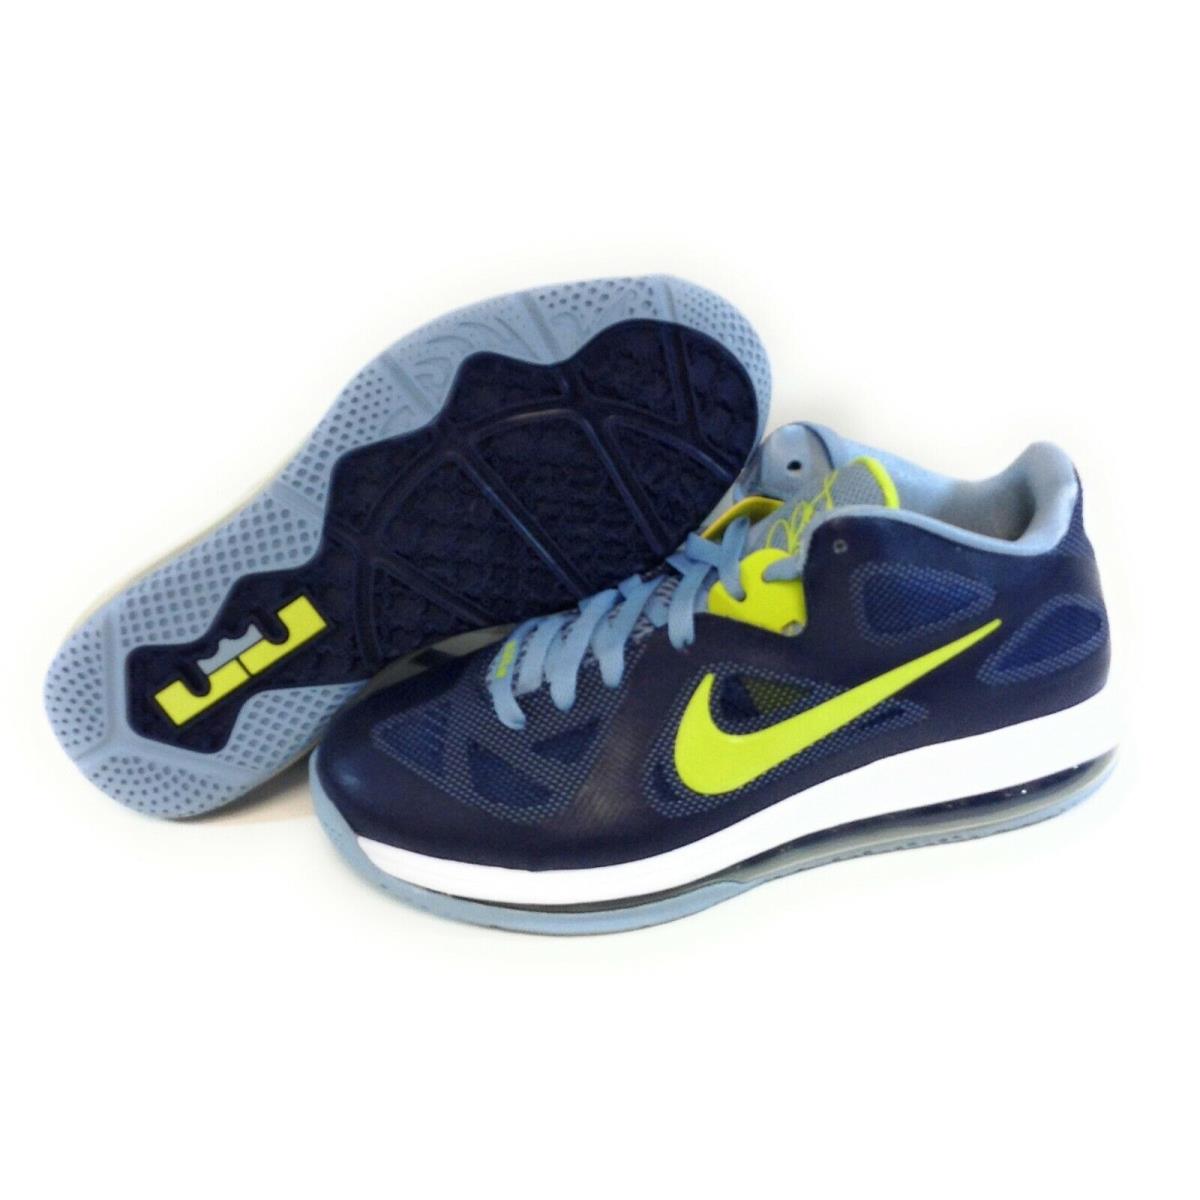 Mens Nike Lebron 9 Low 510811 401 Obsidian Cyber 2011 Deadstock Sneakers Shoes